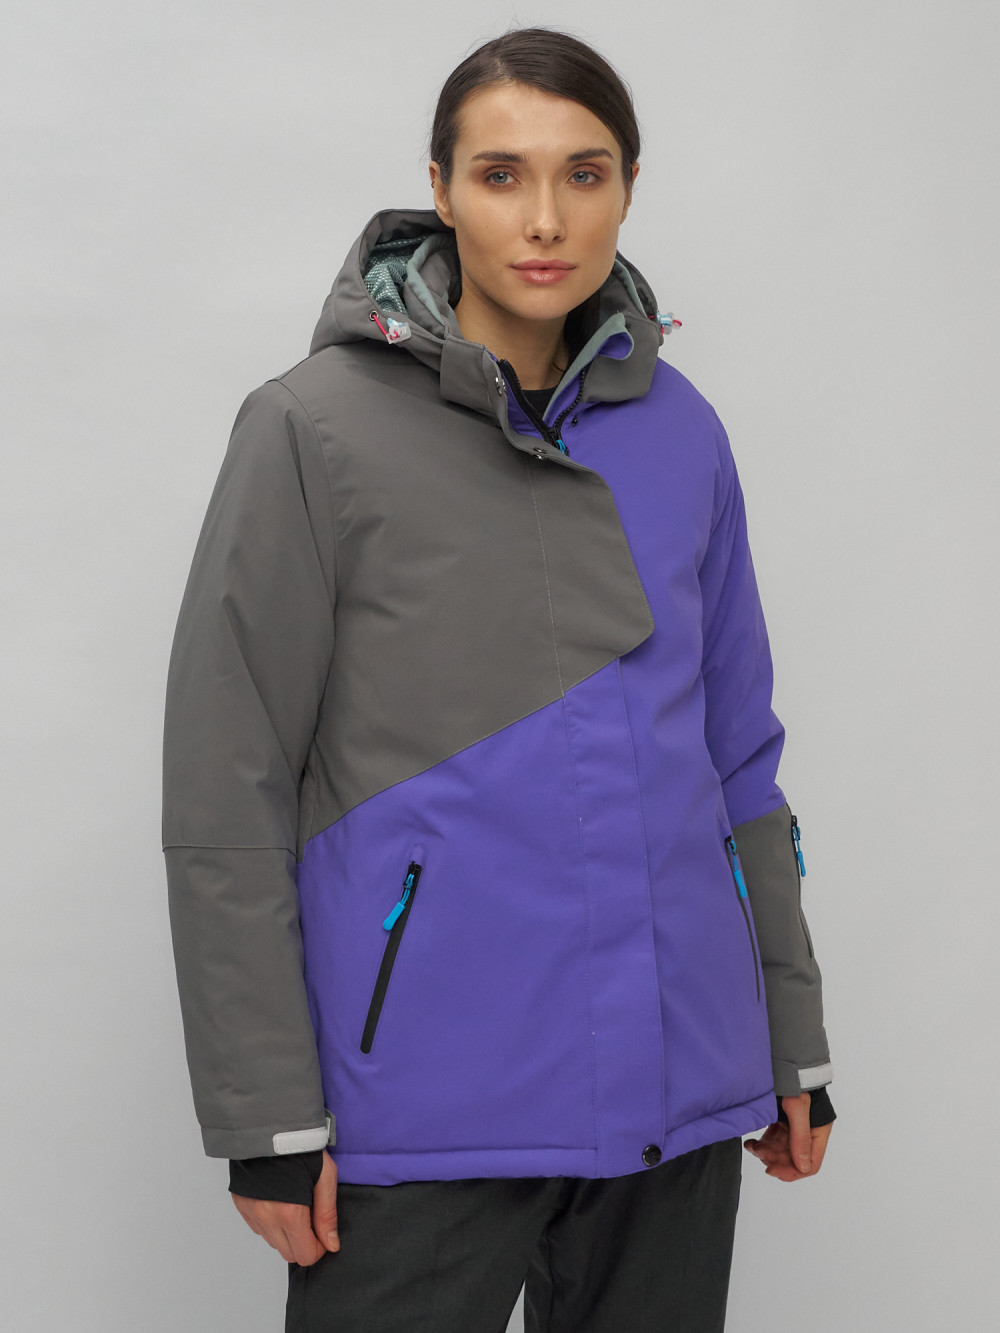 Купить оптом Горнолыжная куртка женская зимняя большого размера фиолетового цвета 2278F в Екатеринбурге